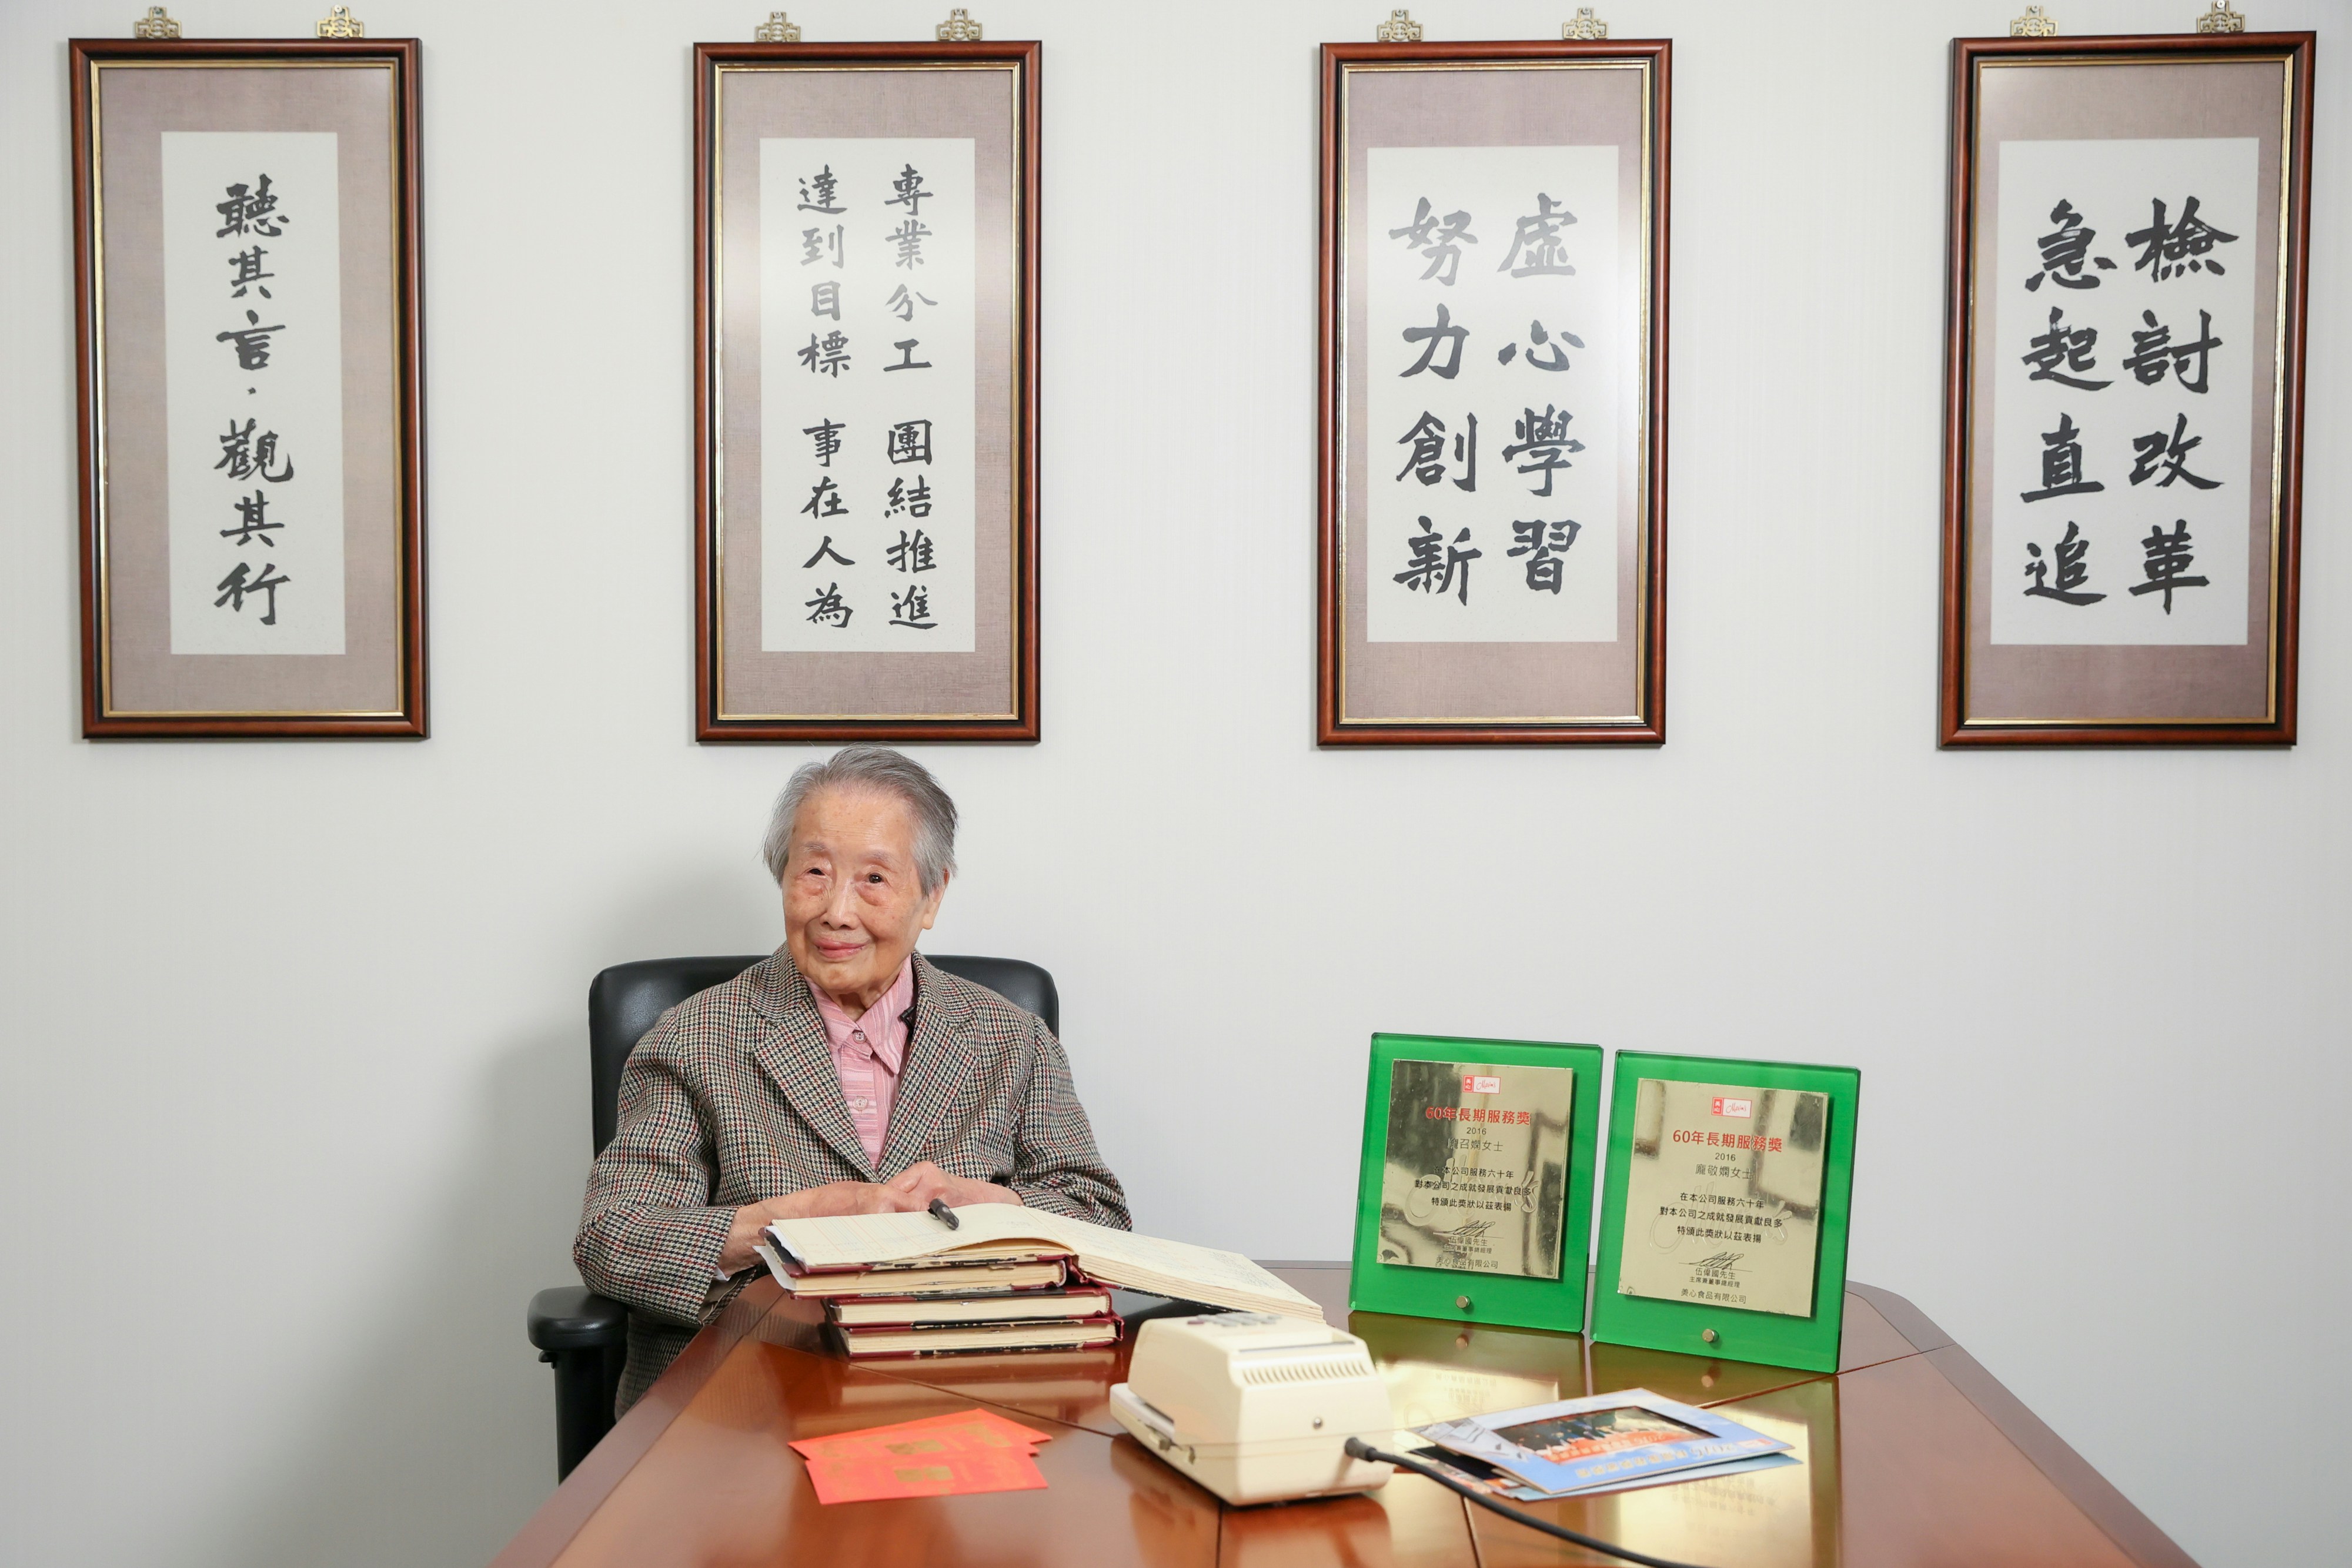 美心最年长的员工，是年届103岁的高级财务经理庞敬娴。（美心提供相片）